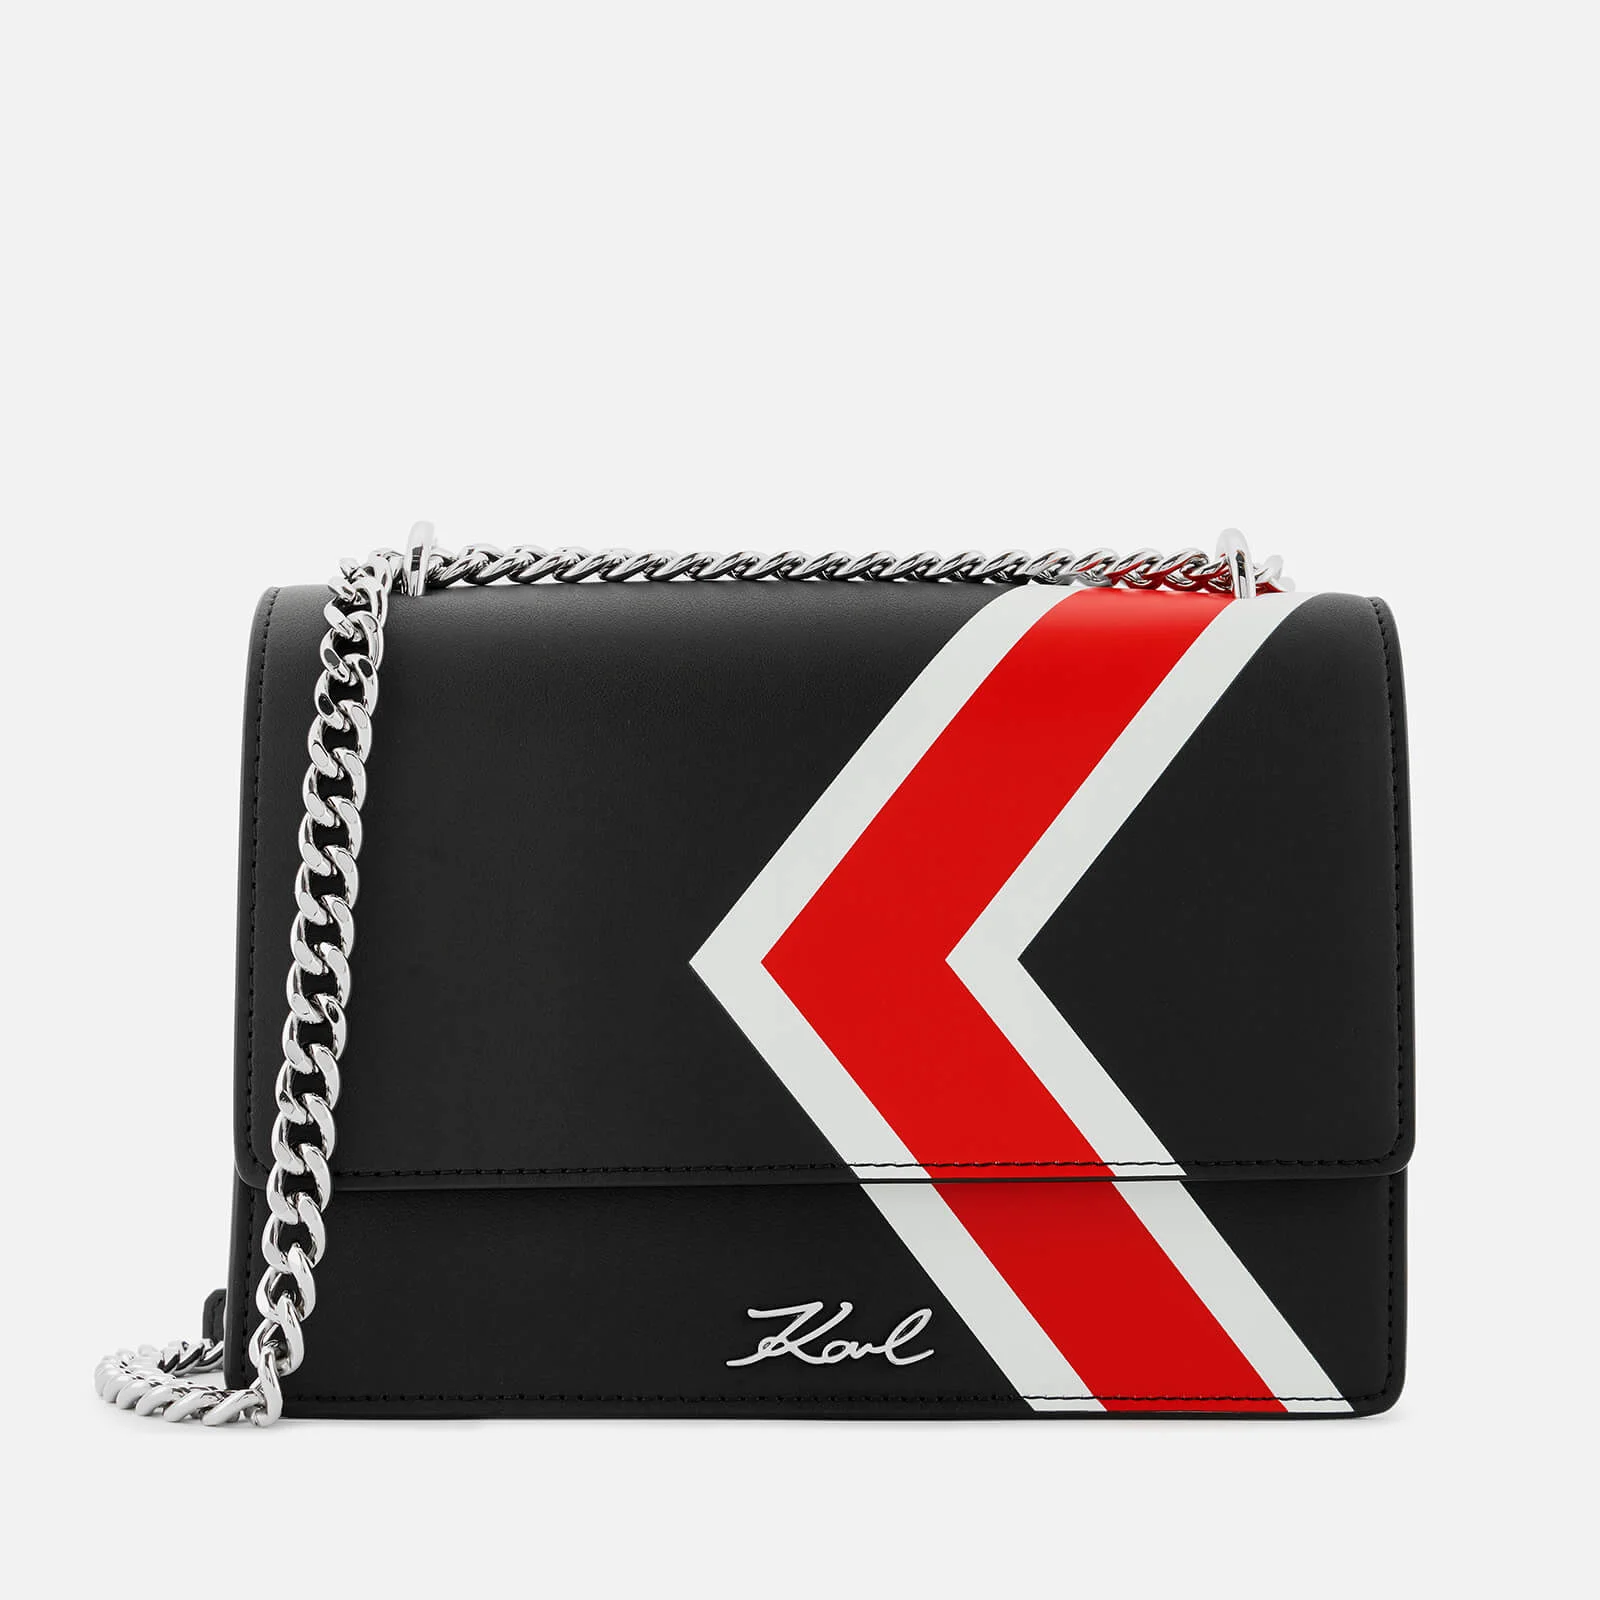 Karl Lagerfeld Women's K/Stripes Shoulder Bag - Black Image 1